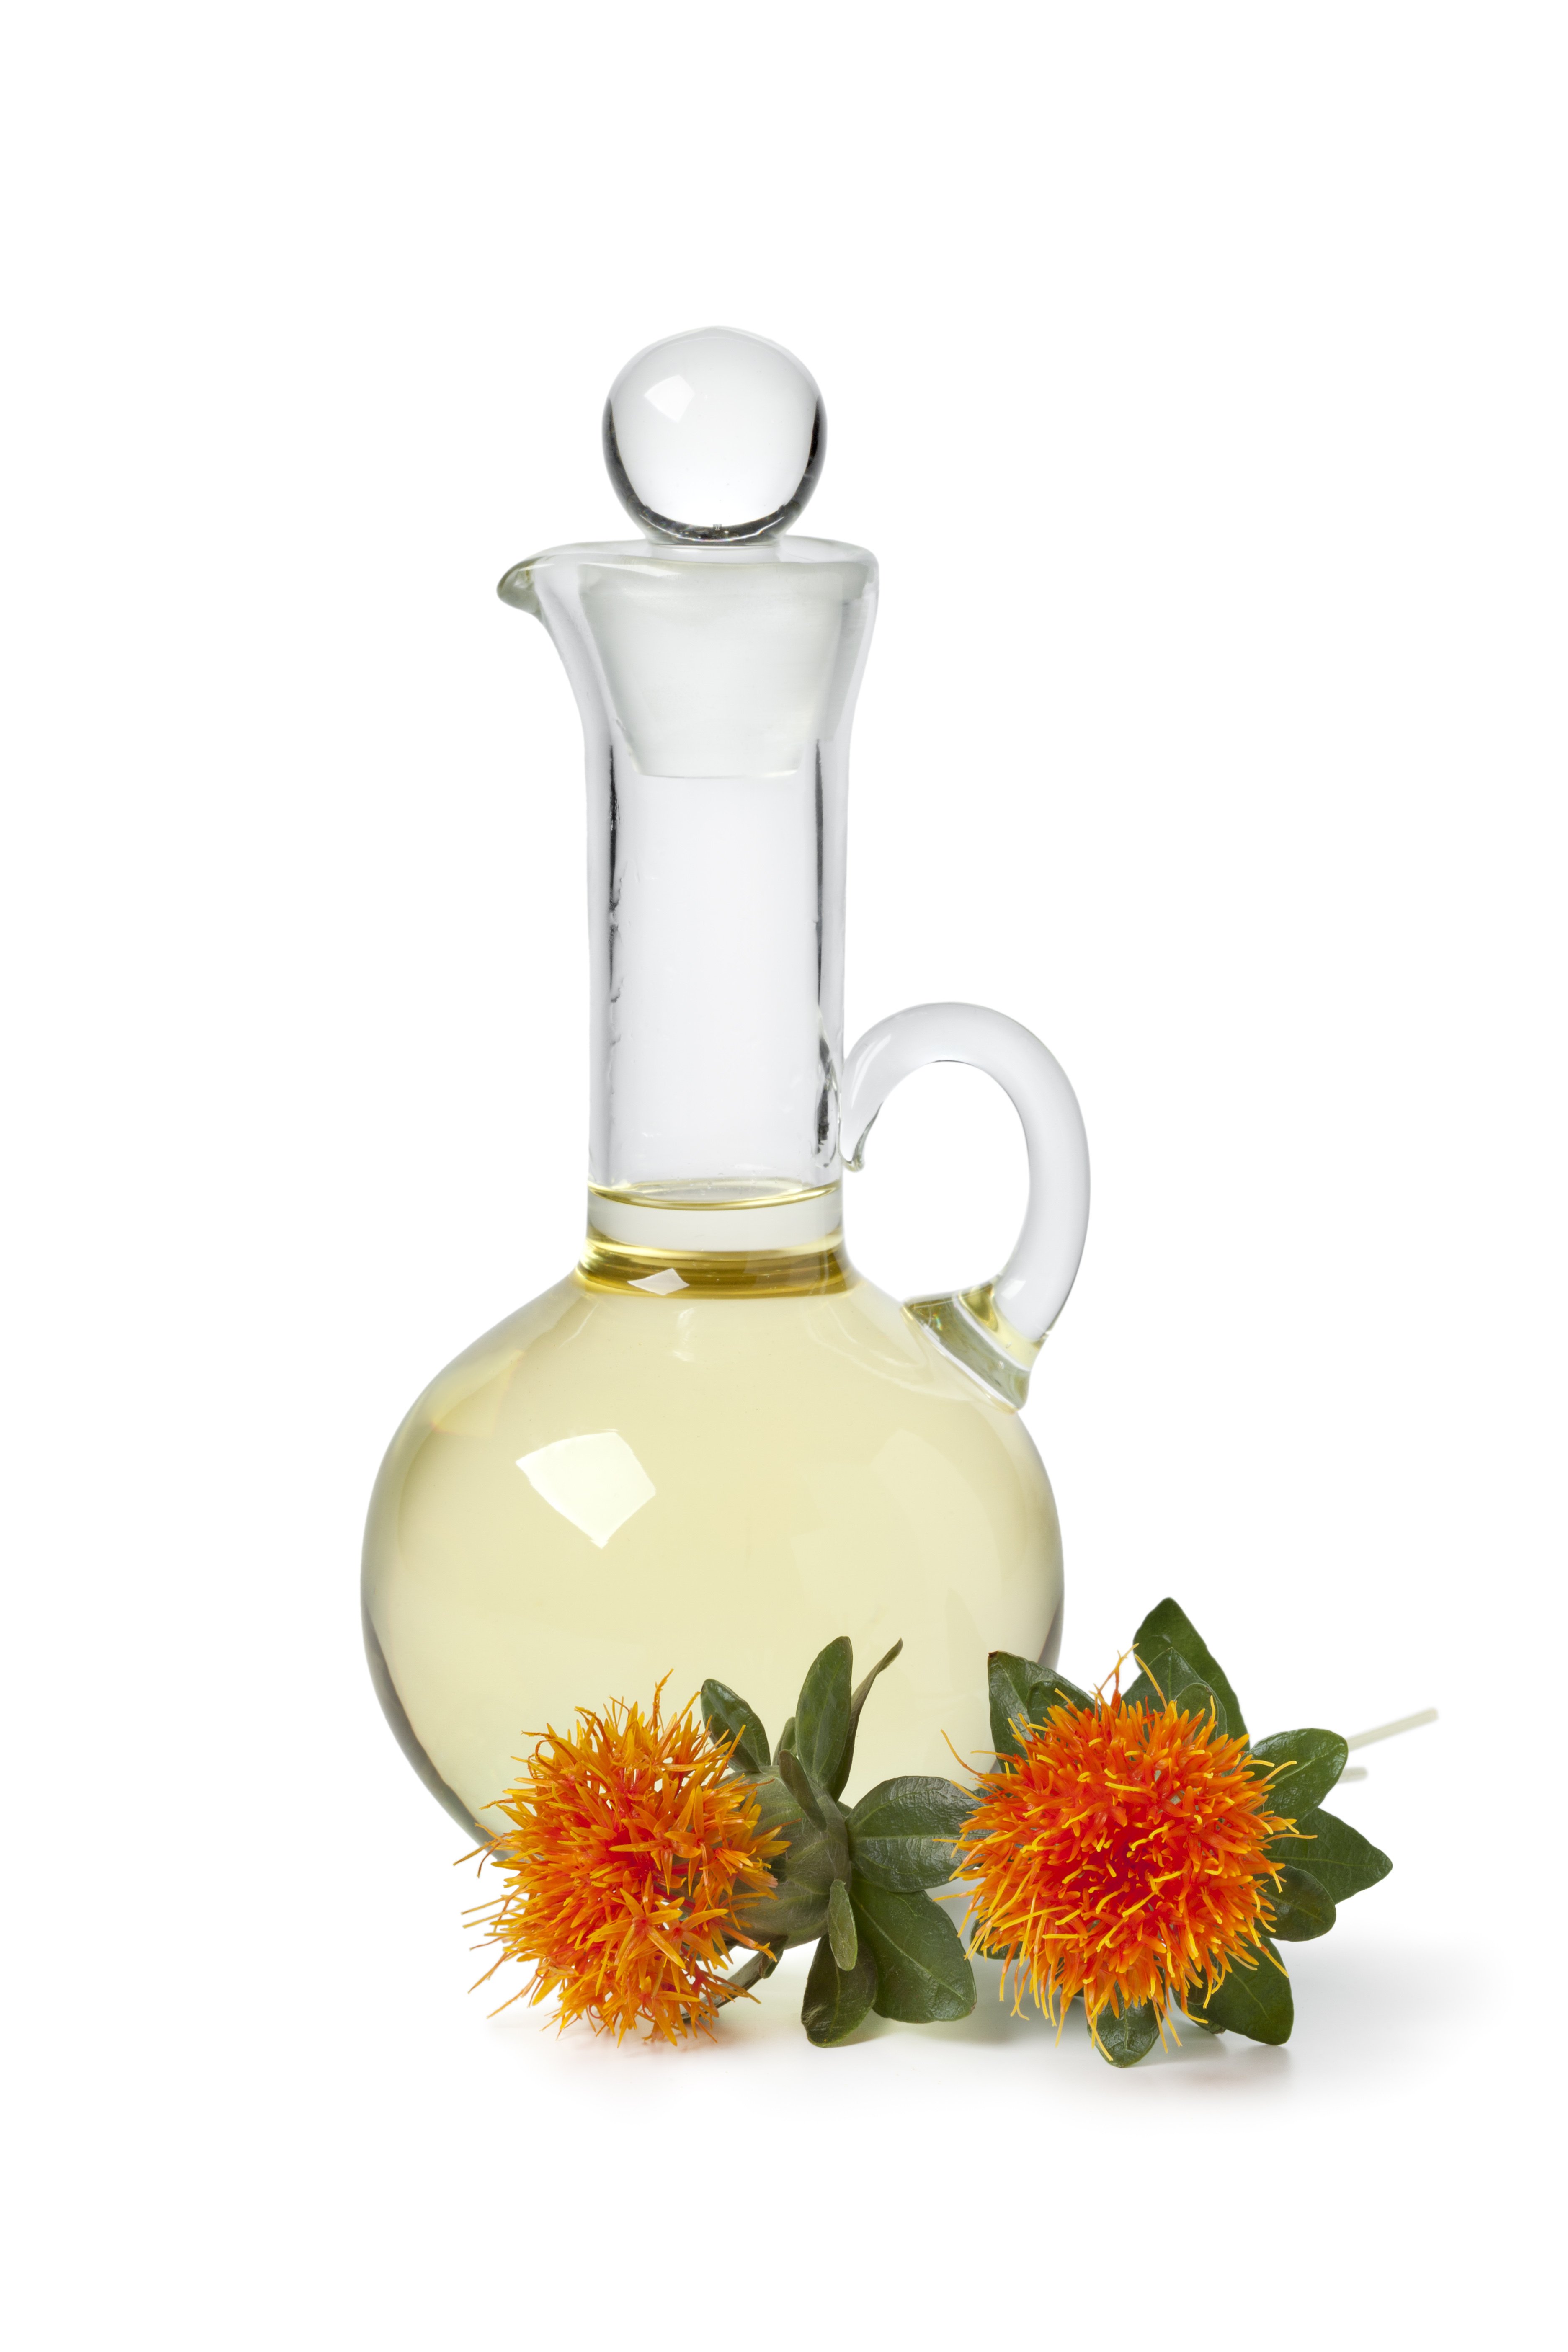 Safflower oil next to safflower flowers | Shutterstock